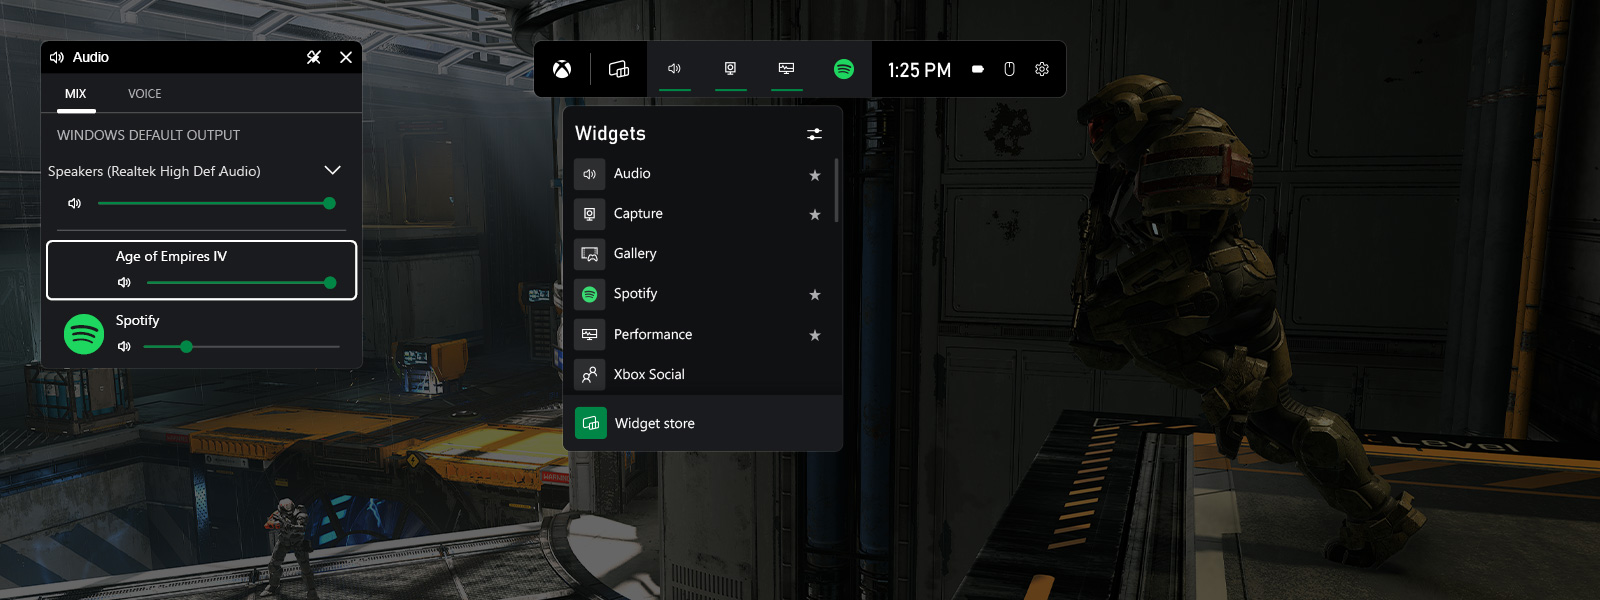 captura de pantalla del panel de Xbox que muestra la configuración de audio y los widgets predeterminados